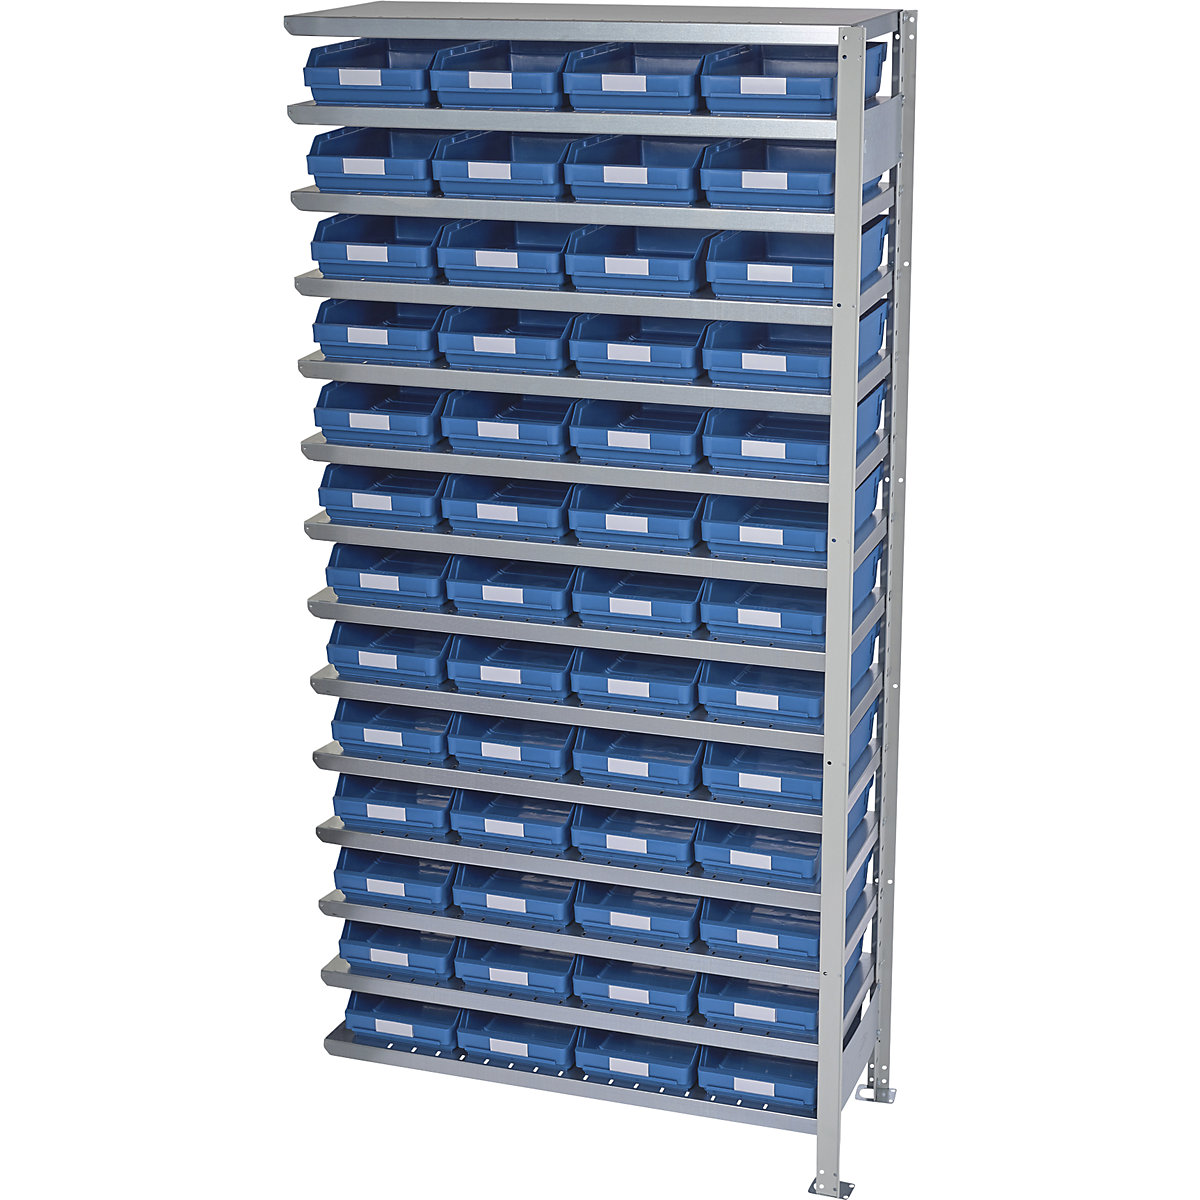 Összedugaszolós állvány dobozokkal – STEMO, állványmagasság 2100 mm, bővítő állvány, 500 mm mély, 52 kék doboz-7